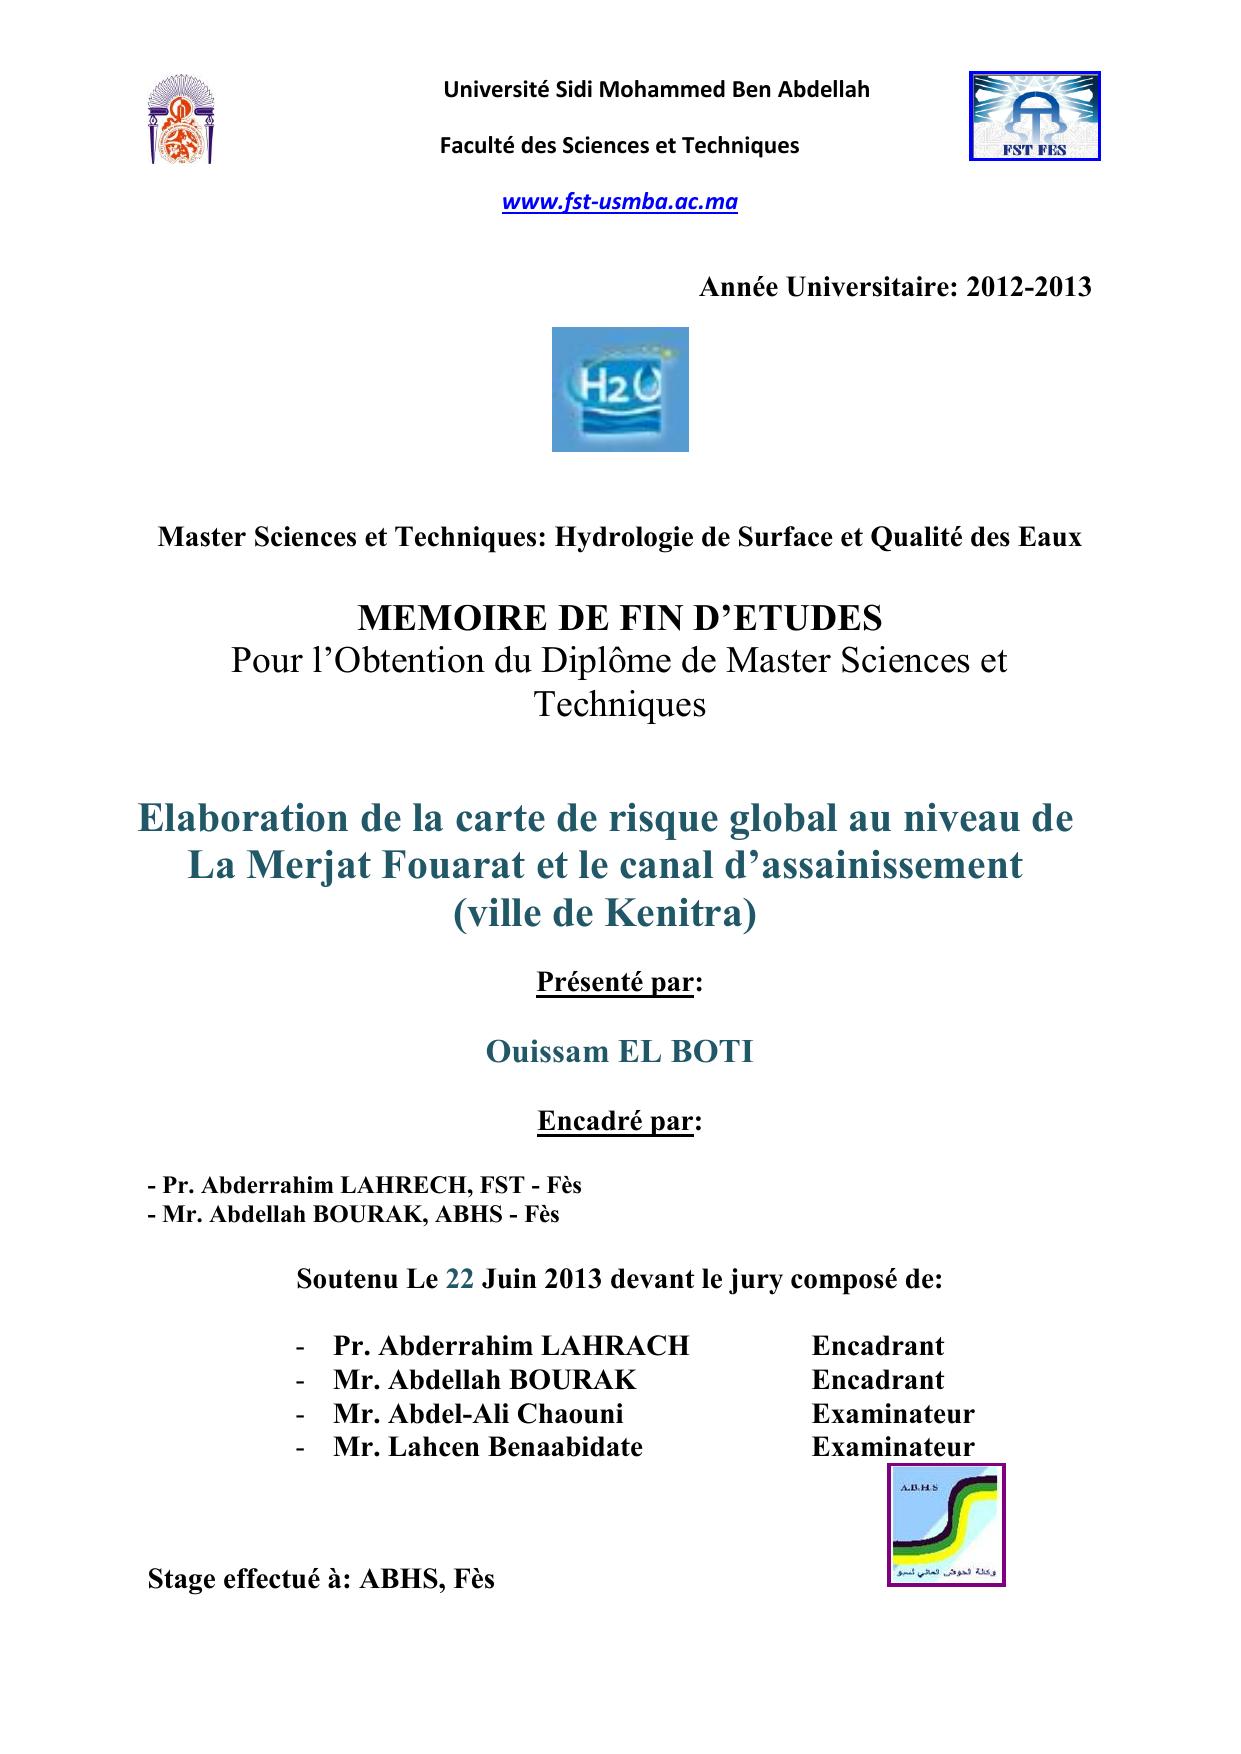 Elaboration de la carte de risque global au niveau de La Merjat Fouarat et le canal d’assainissement (ville de Kenitra)